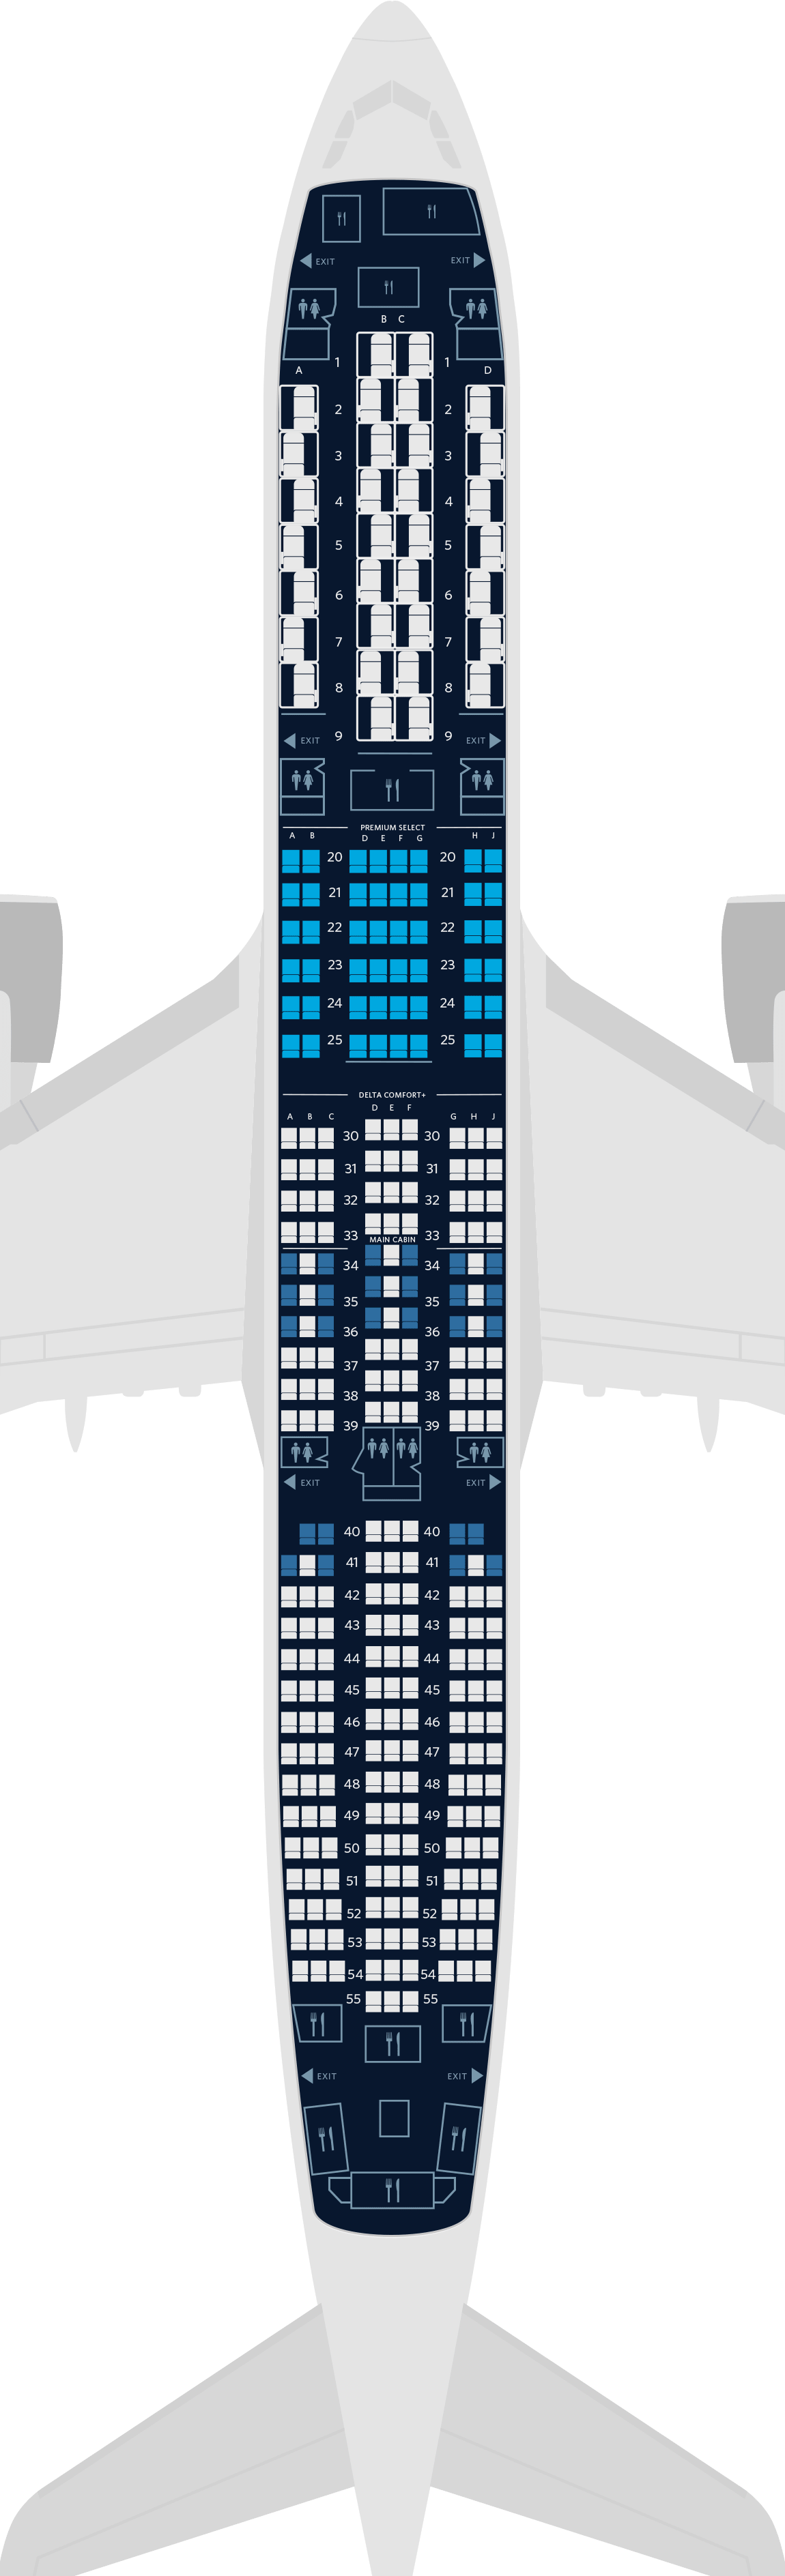  Mapa de assentos do Airbus A350-900 com 4 cabines